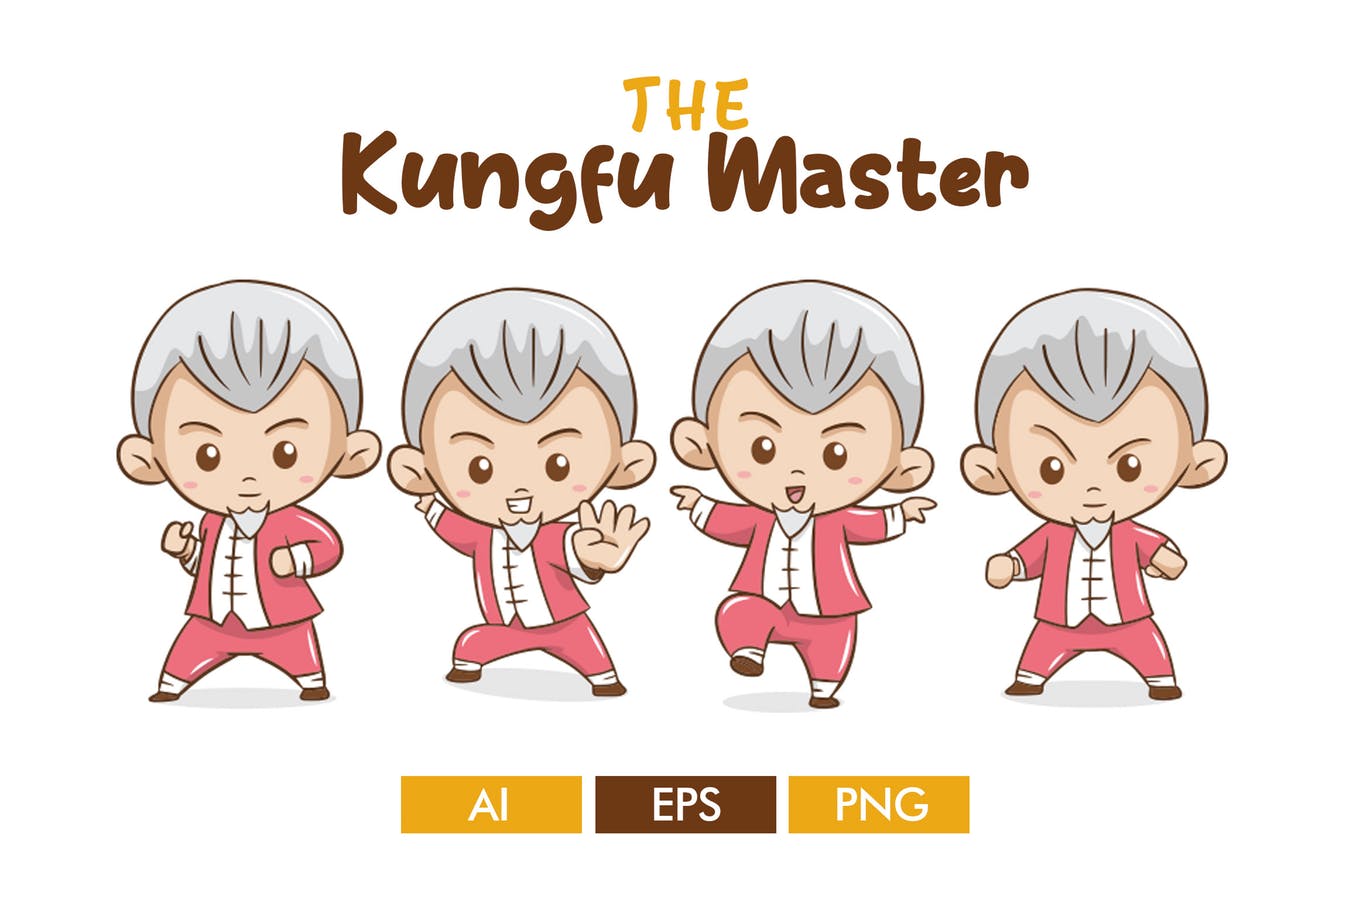 卡通形象功夫大师矢量第一素材精选设计素材 The Kungfu Master插图